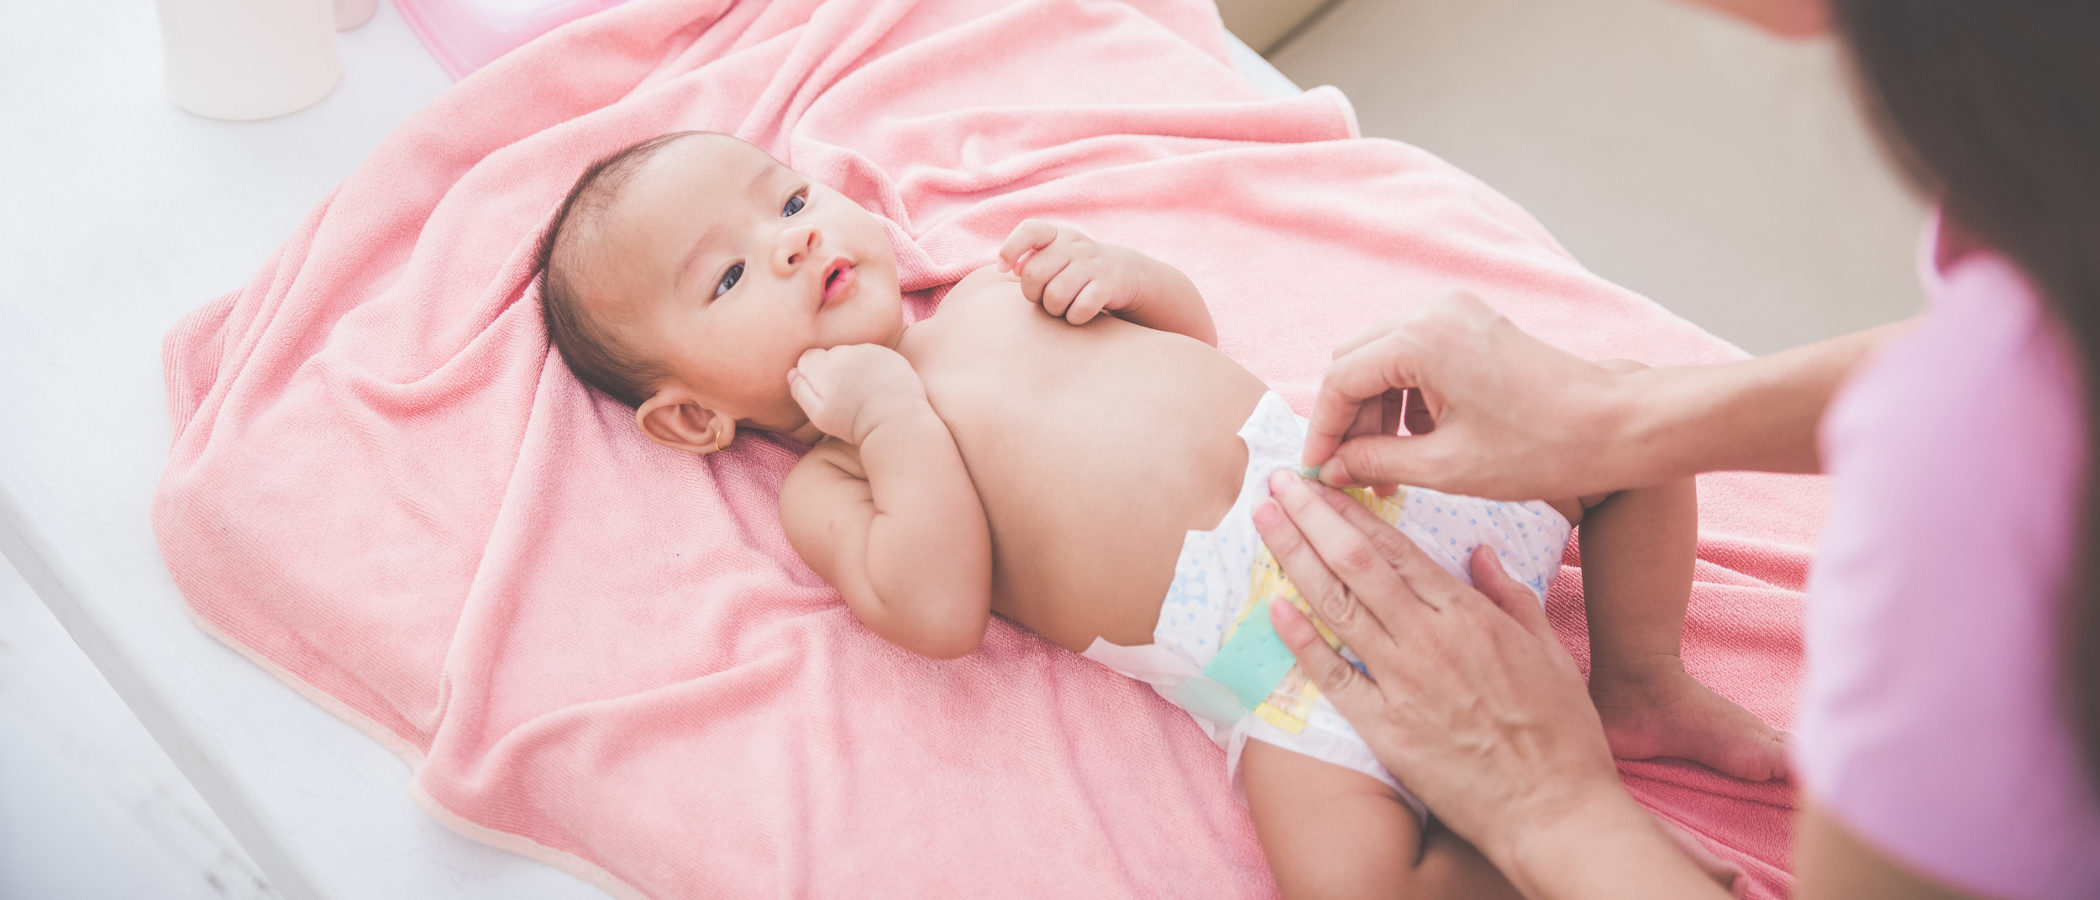 Cuántas deposiciones debe hacer al día un bebé recién nacido